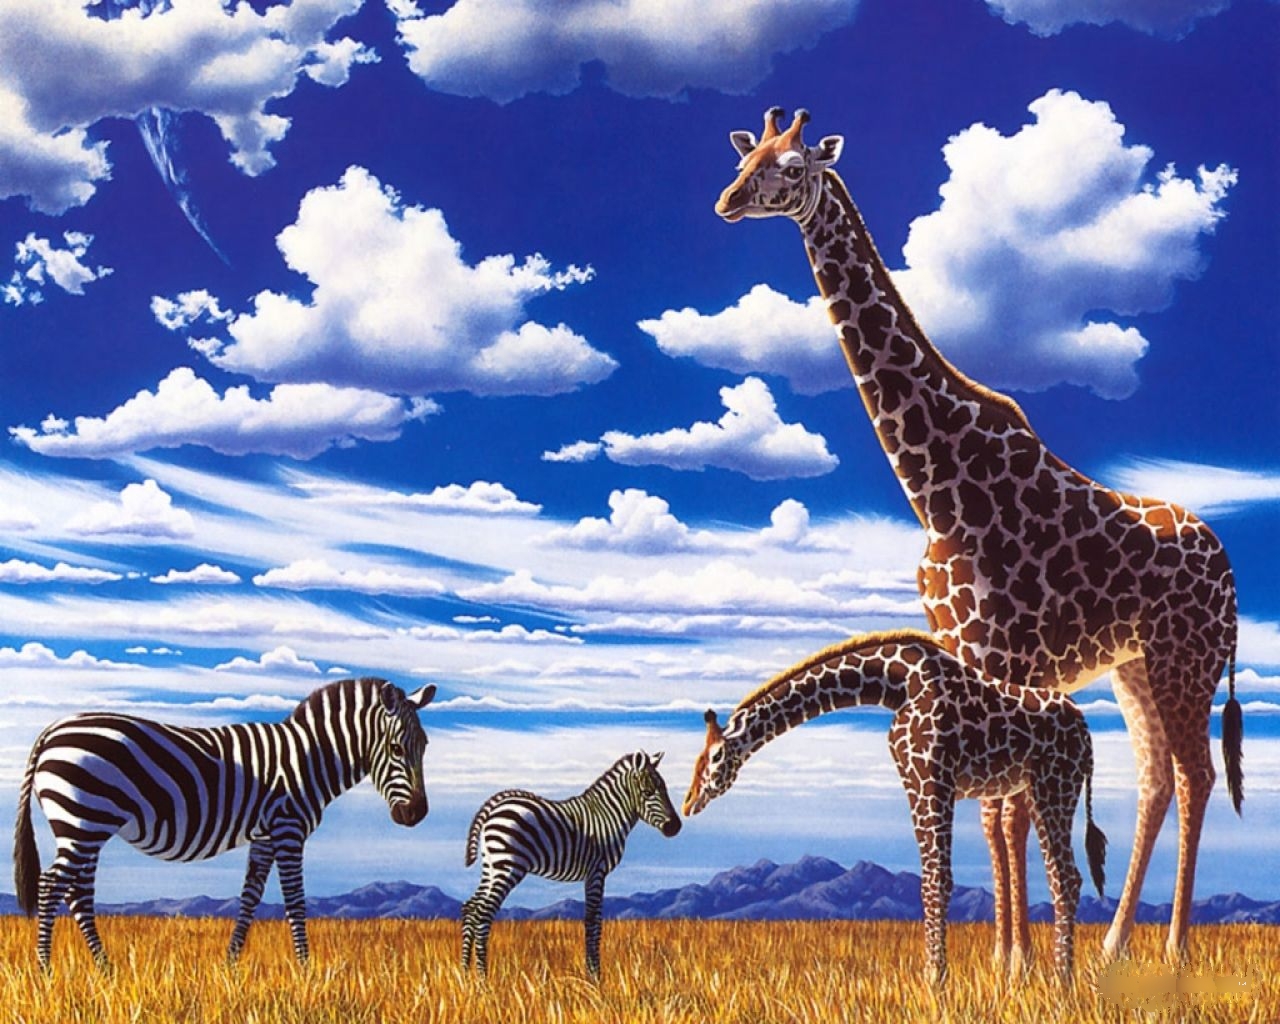 Hd Wallpapers Zebra And Giraffes - Zebra And Giraffe , HD Wallpaper & Backgrounds